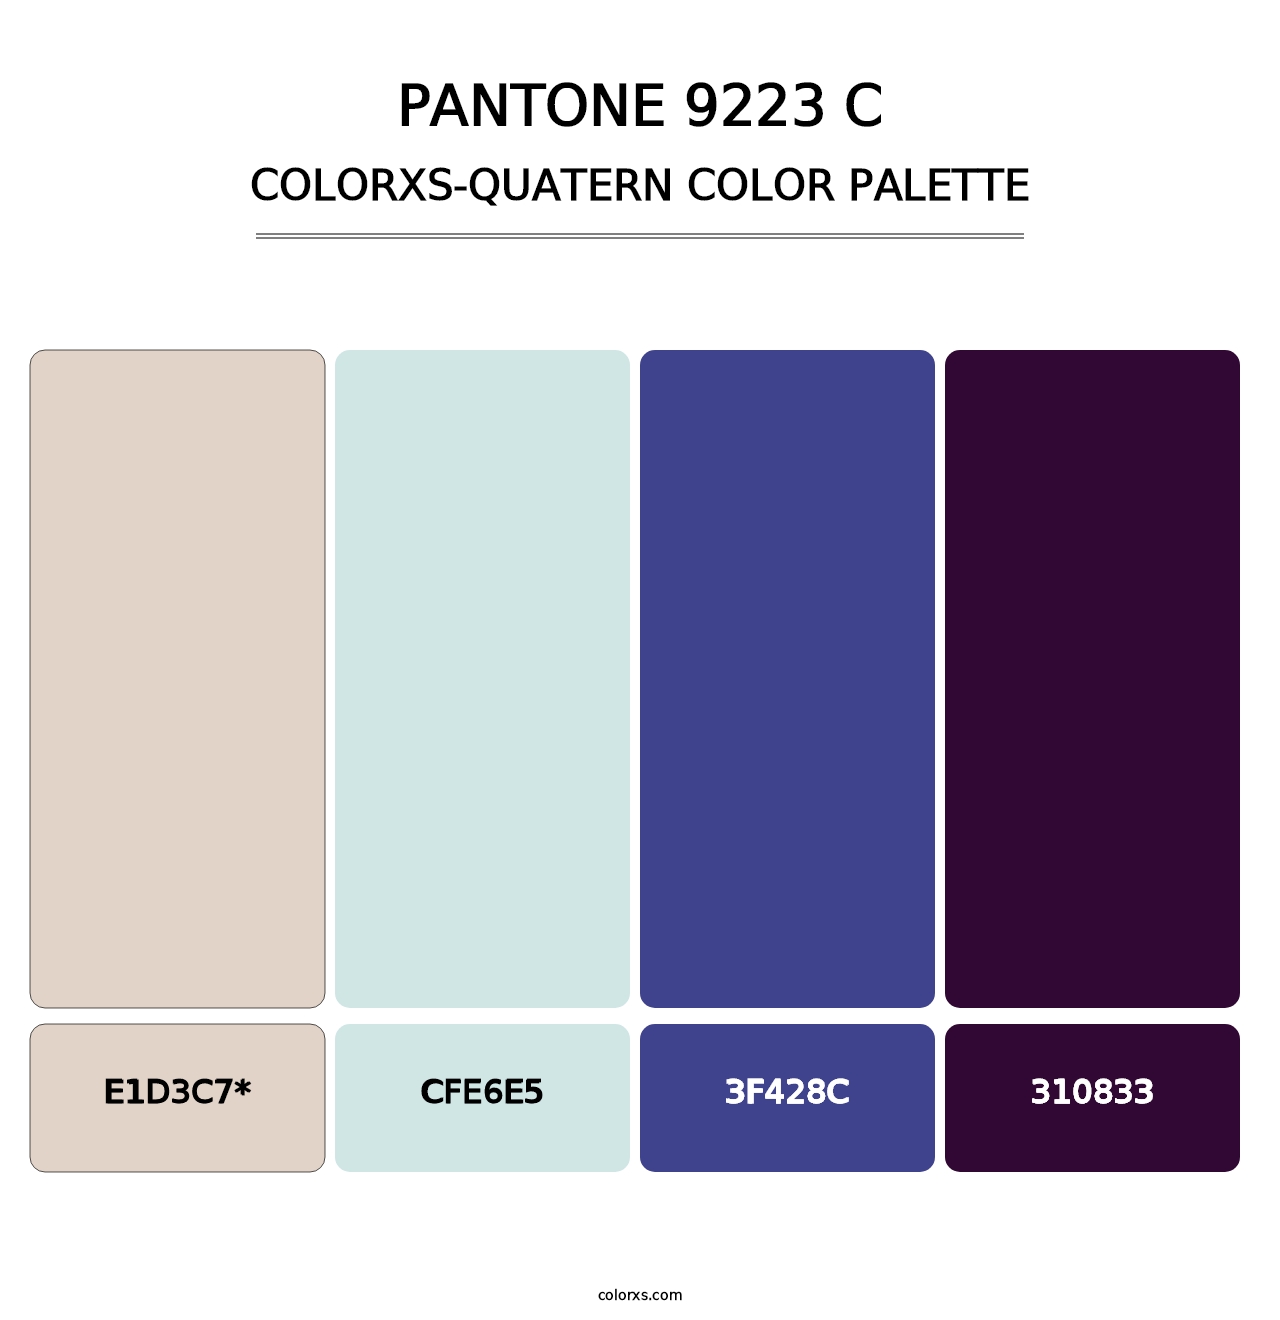 PANTONE 9223 C - Colorxs Quatern Palette